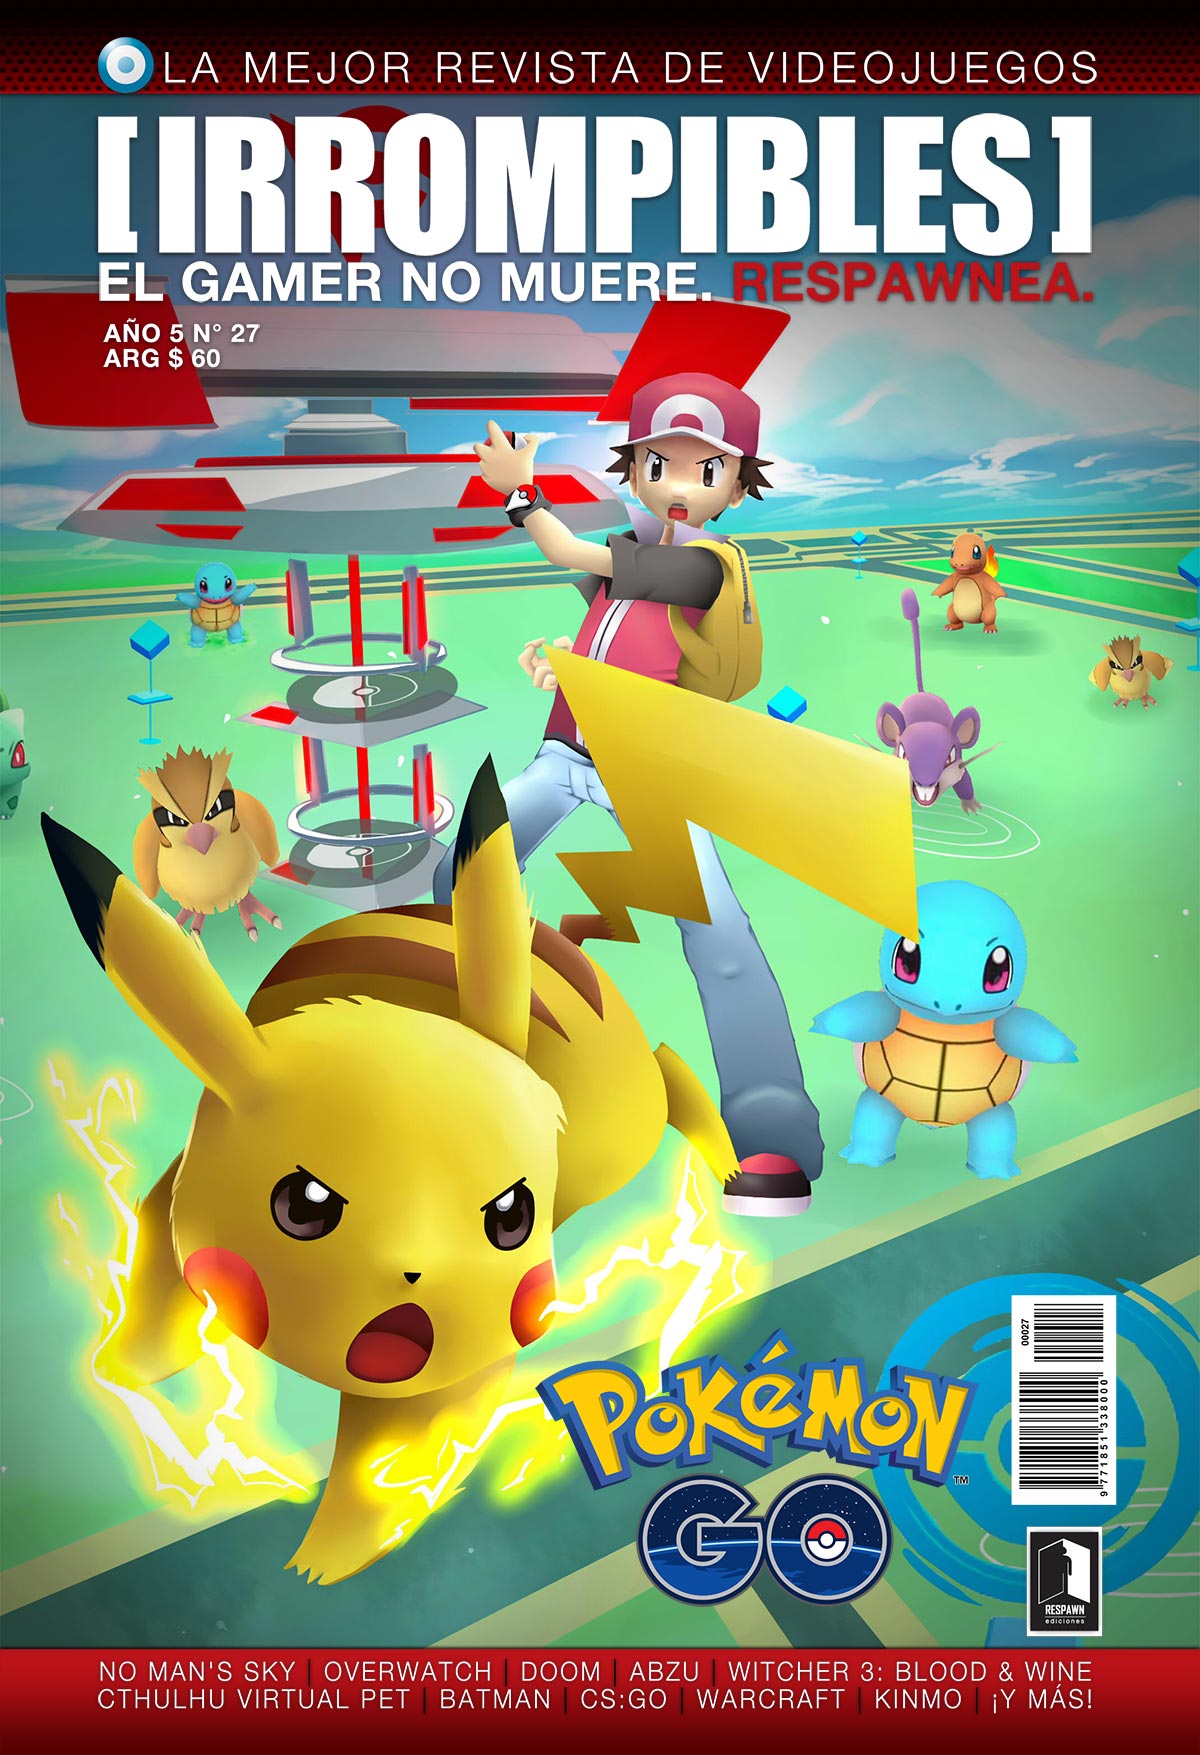 léxico dolor jugo Revista [IRROMPIBLES] 27: Pokémon GO - [IRROMPIBLES] El gamer no muere,  respawnea